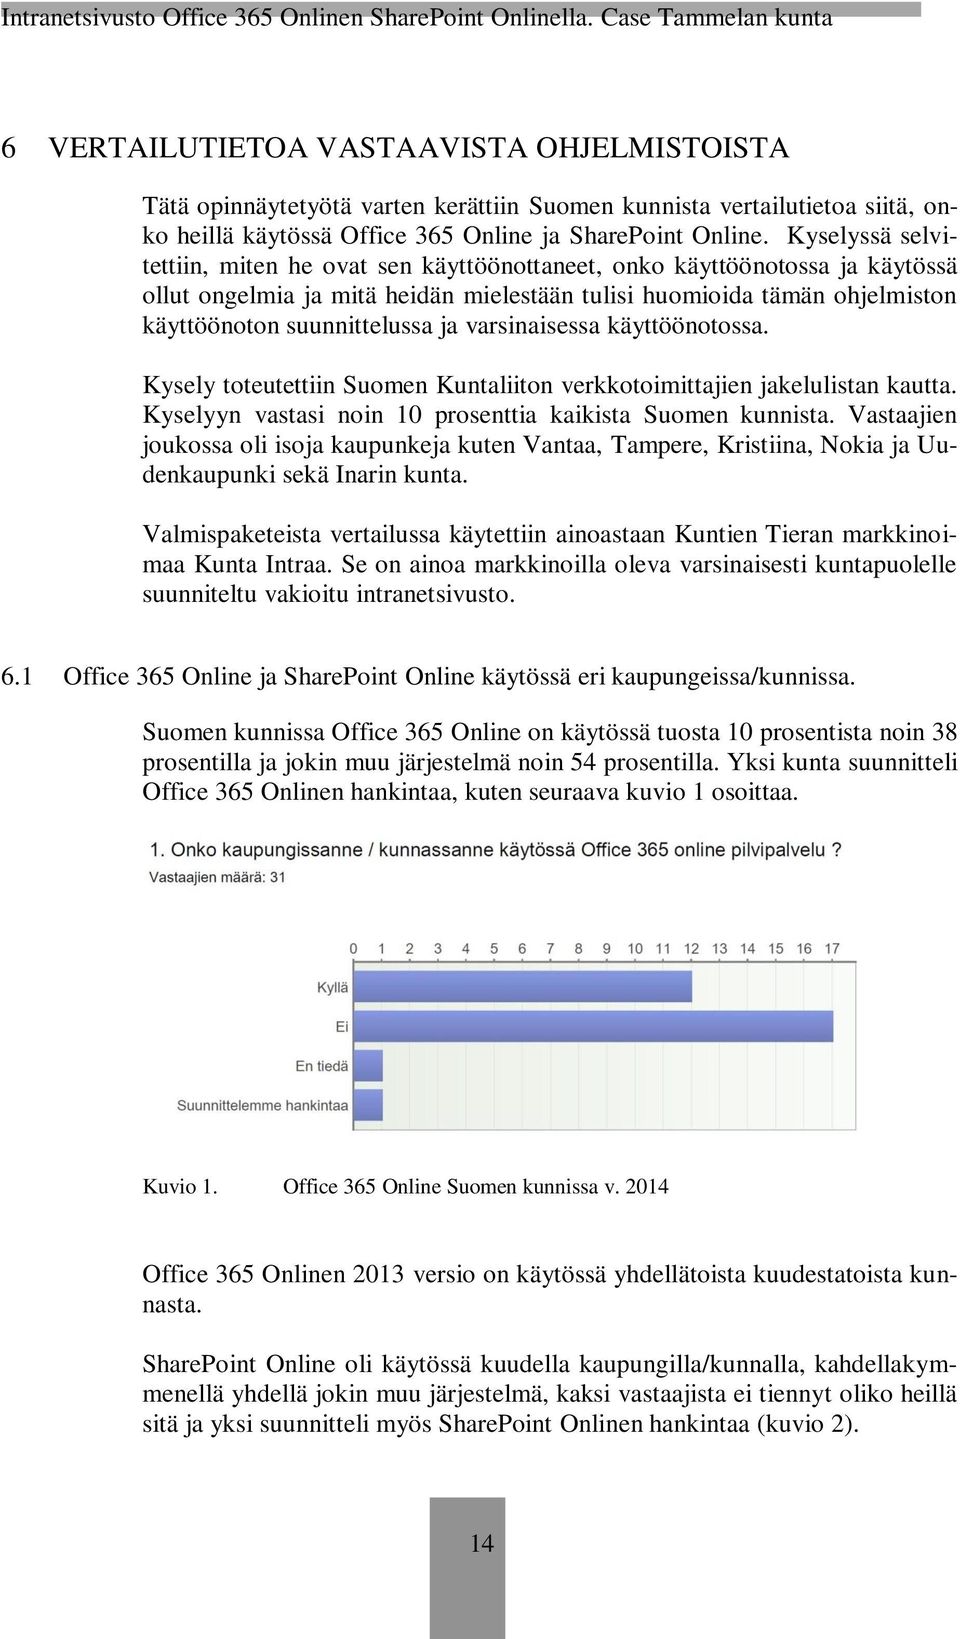 varsinaisessa käyttöönotossa. Kysely toteutettiin Suomen Kuntaliiton verkkotoimittajien jakelulistan kautta. Kyselyyn vastasi noin 10 prosenttia kaikista Suomen kunnista.